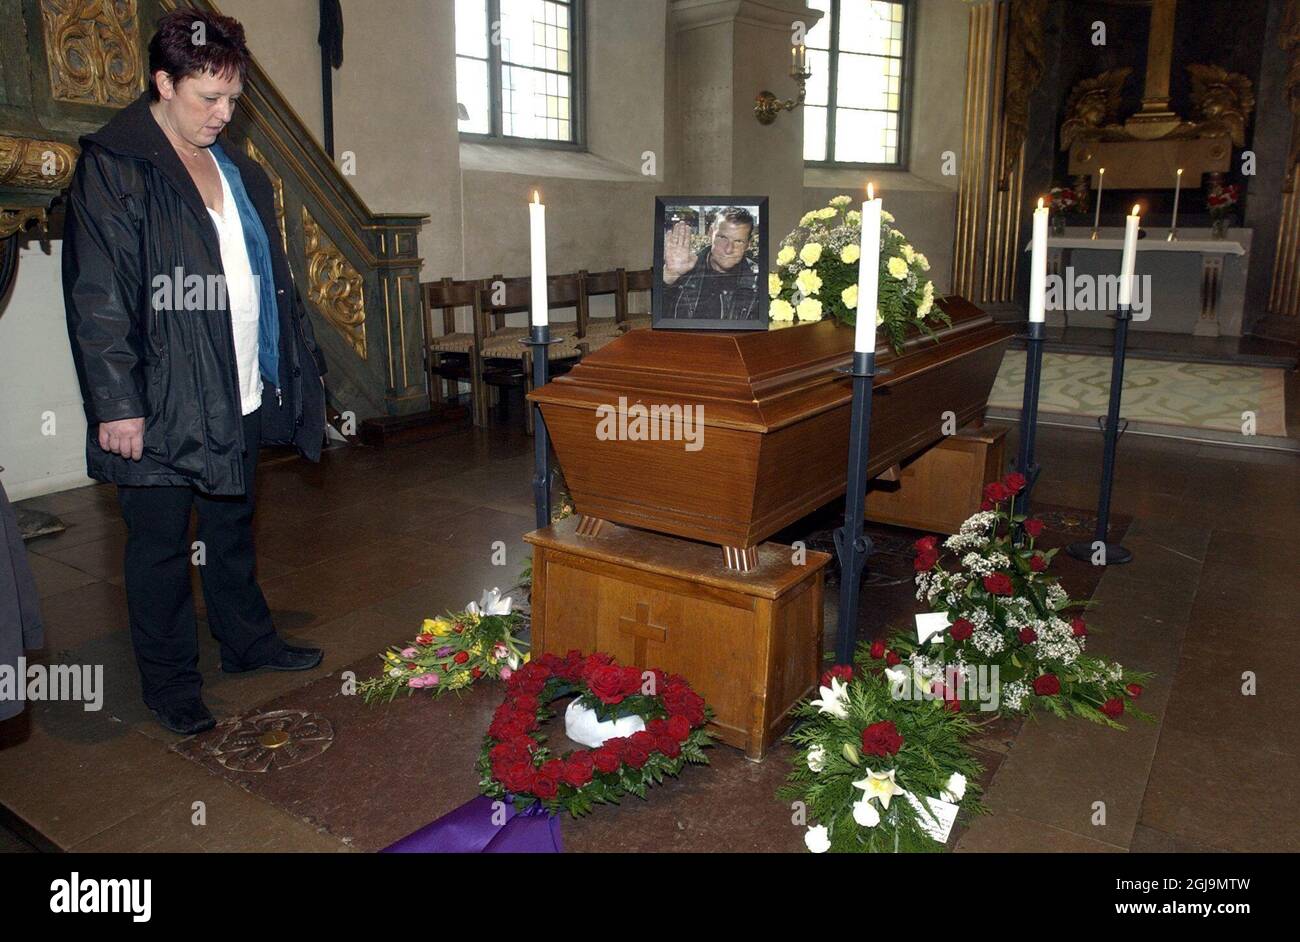 STOCCOLMA 20050120 Christer Pettersson, presunto assassino del primo ministro svedese Olof Palme, è stato sepolto nella chiesa di Sollentuna, fuori Stoccolma, giovedì 20 gennaio 2005. Christer Pettersson, un criminale e alcolista di piccola epoca, è stato arrestato per l'assassinio del Primostro svedese Olof Palme nel dicembre 1988. Identificato dalla moglie di Olof Palme Lisset come l'assassino, fu processato e condannato per l'omicidio, ma fu poi assolto in appello. Dopo ulteriori prove contro Pettersson emerse alla fine degli anni '90, ma nel maggio 1998 la Corte Suprema svedese ha ribaltato la richiesta. Christer PE Foto Stock